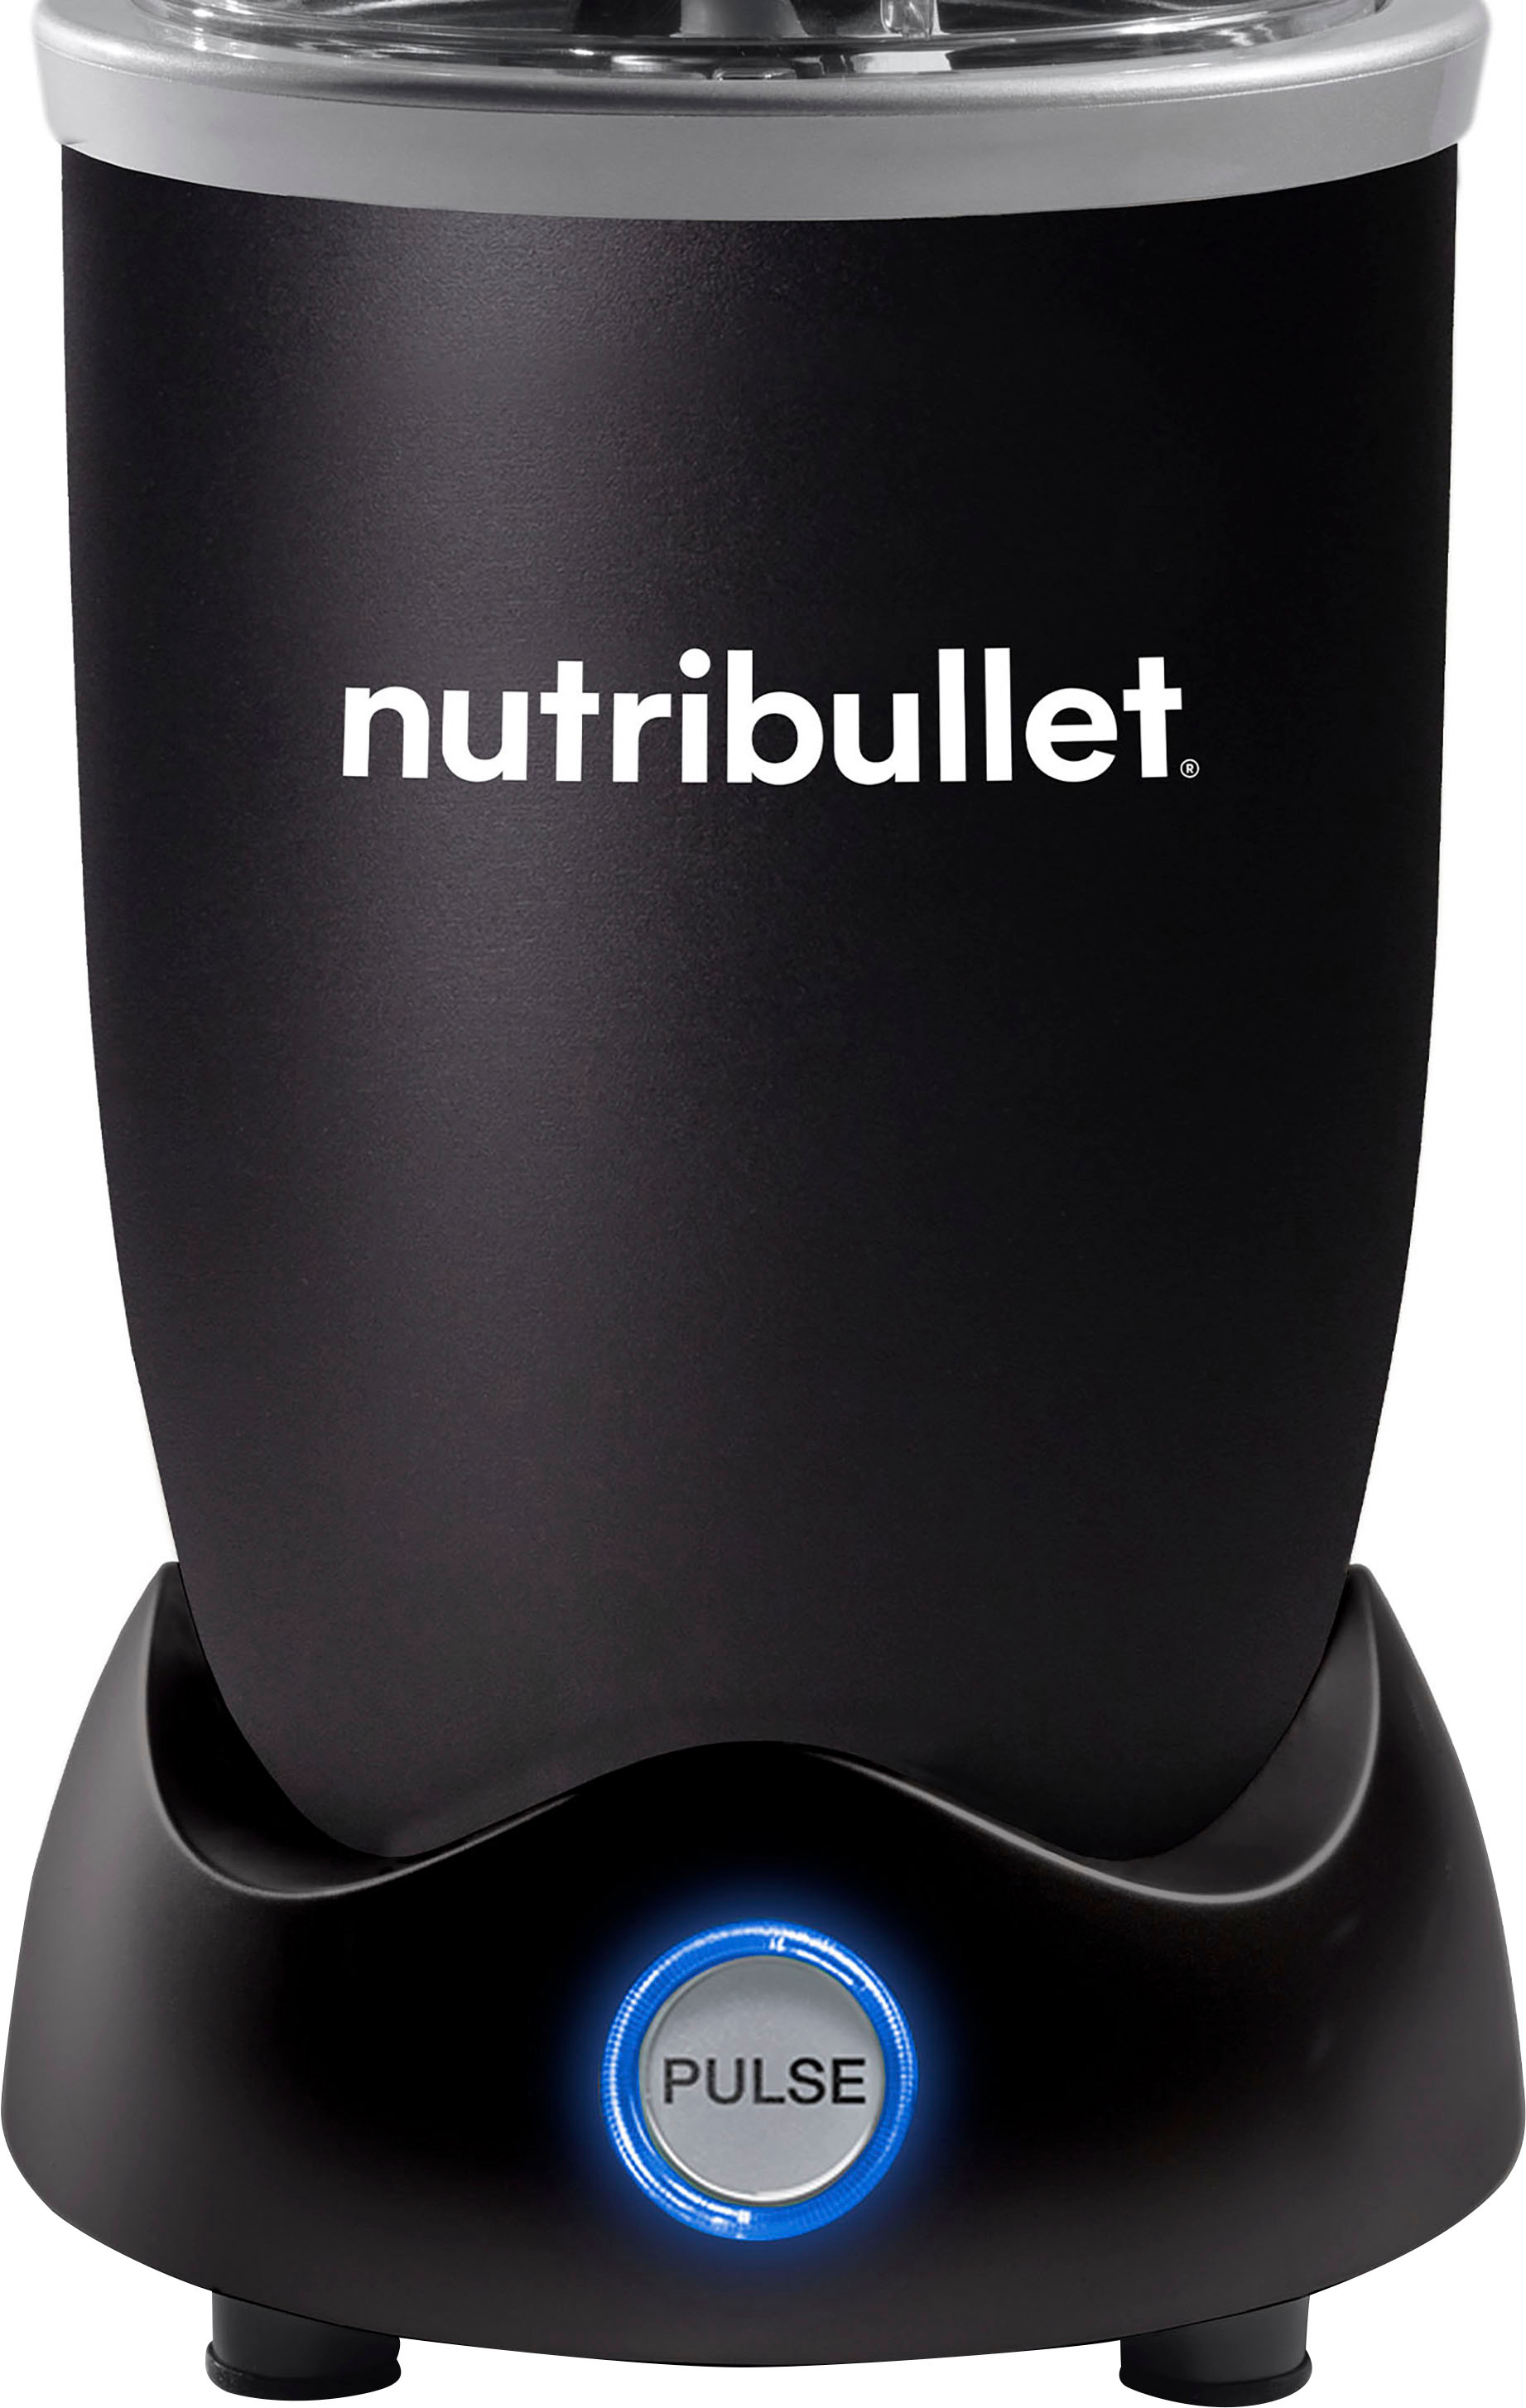 NutriBullet Pro Plus 1200 Watt Personal Blender with Pulse Function  N12-1001 Matte Black N12-1001MK - Best Buy